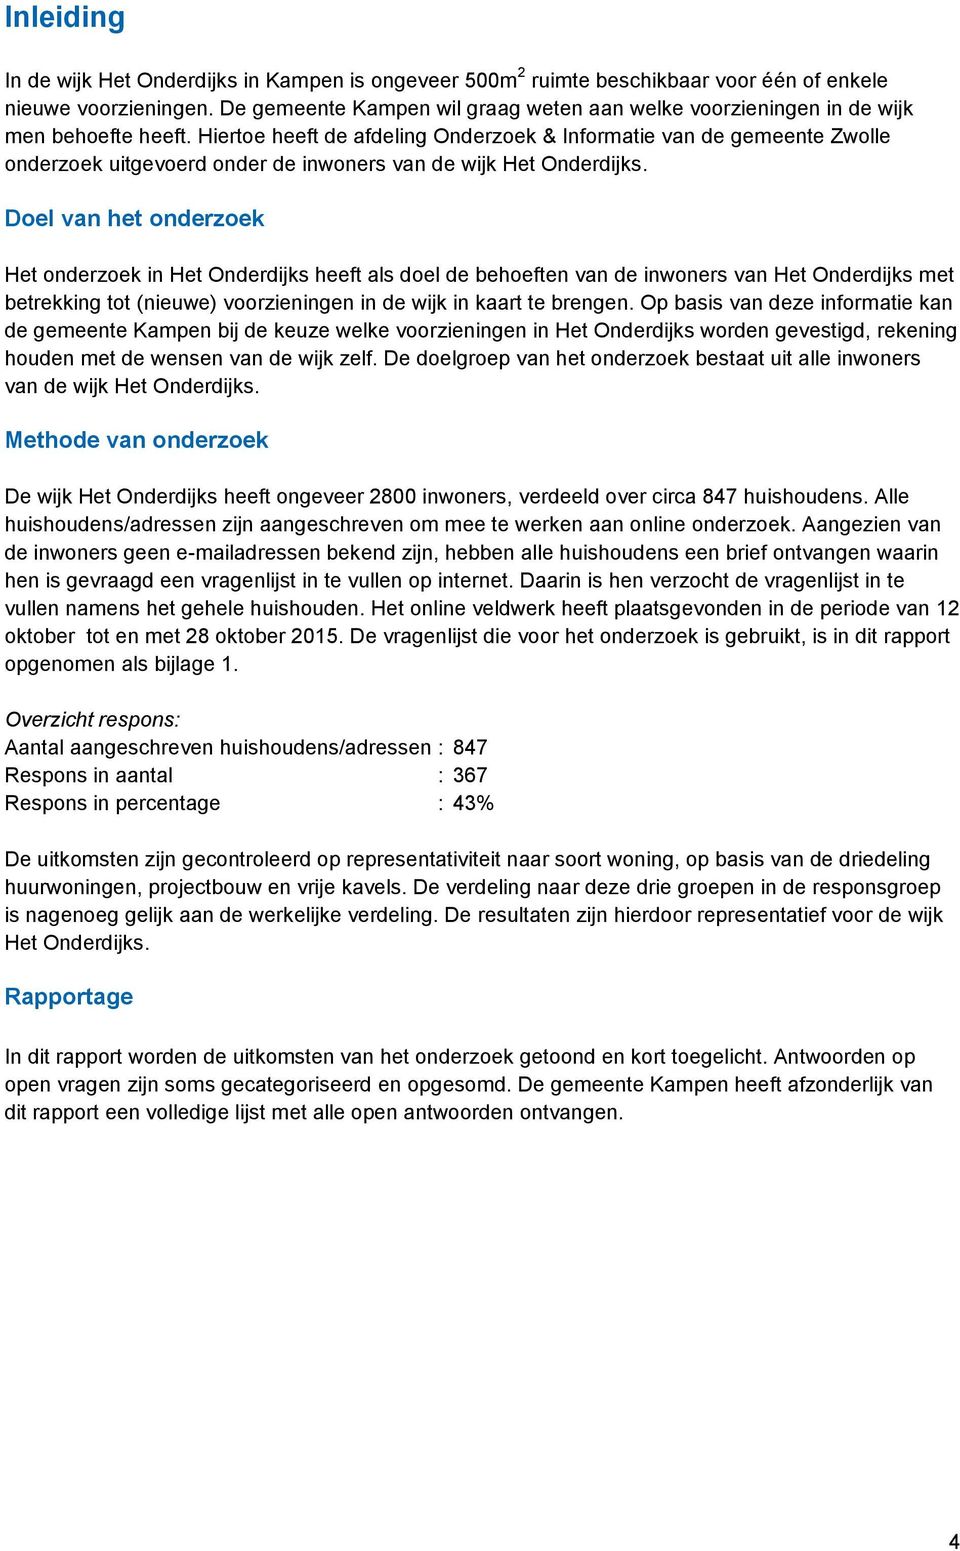 Hiertoe heeft de afdeling Onderzoek & Informatie van de gemeente Zwolle onderzoek uitgevoerd onder de inwoners van de wijk Het Onderdijks.